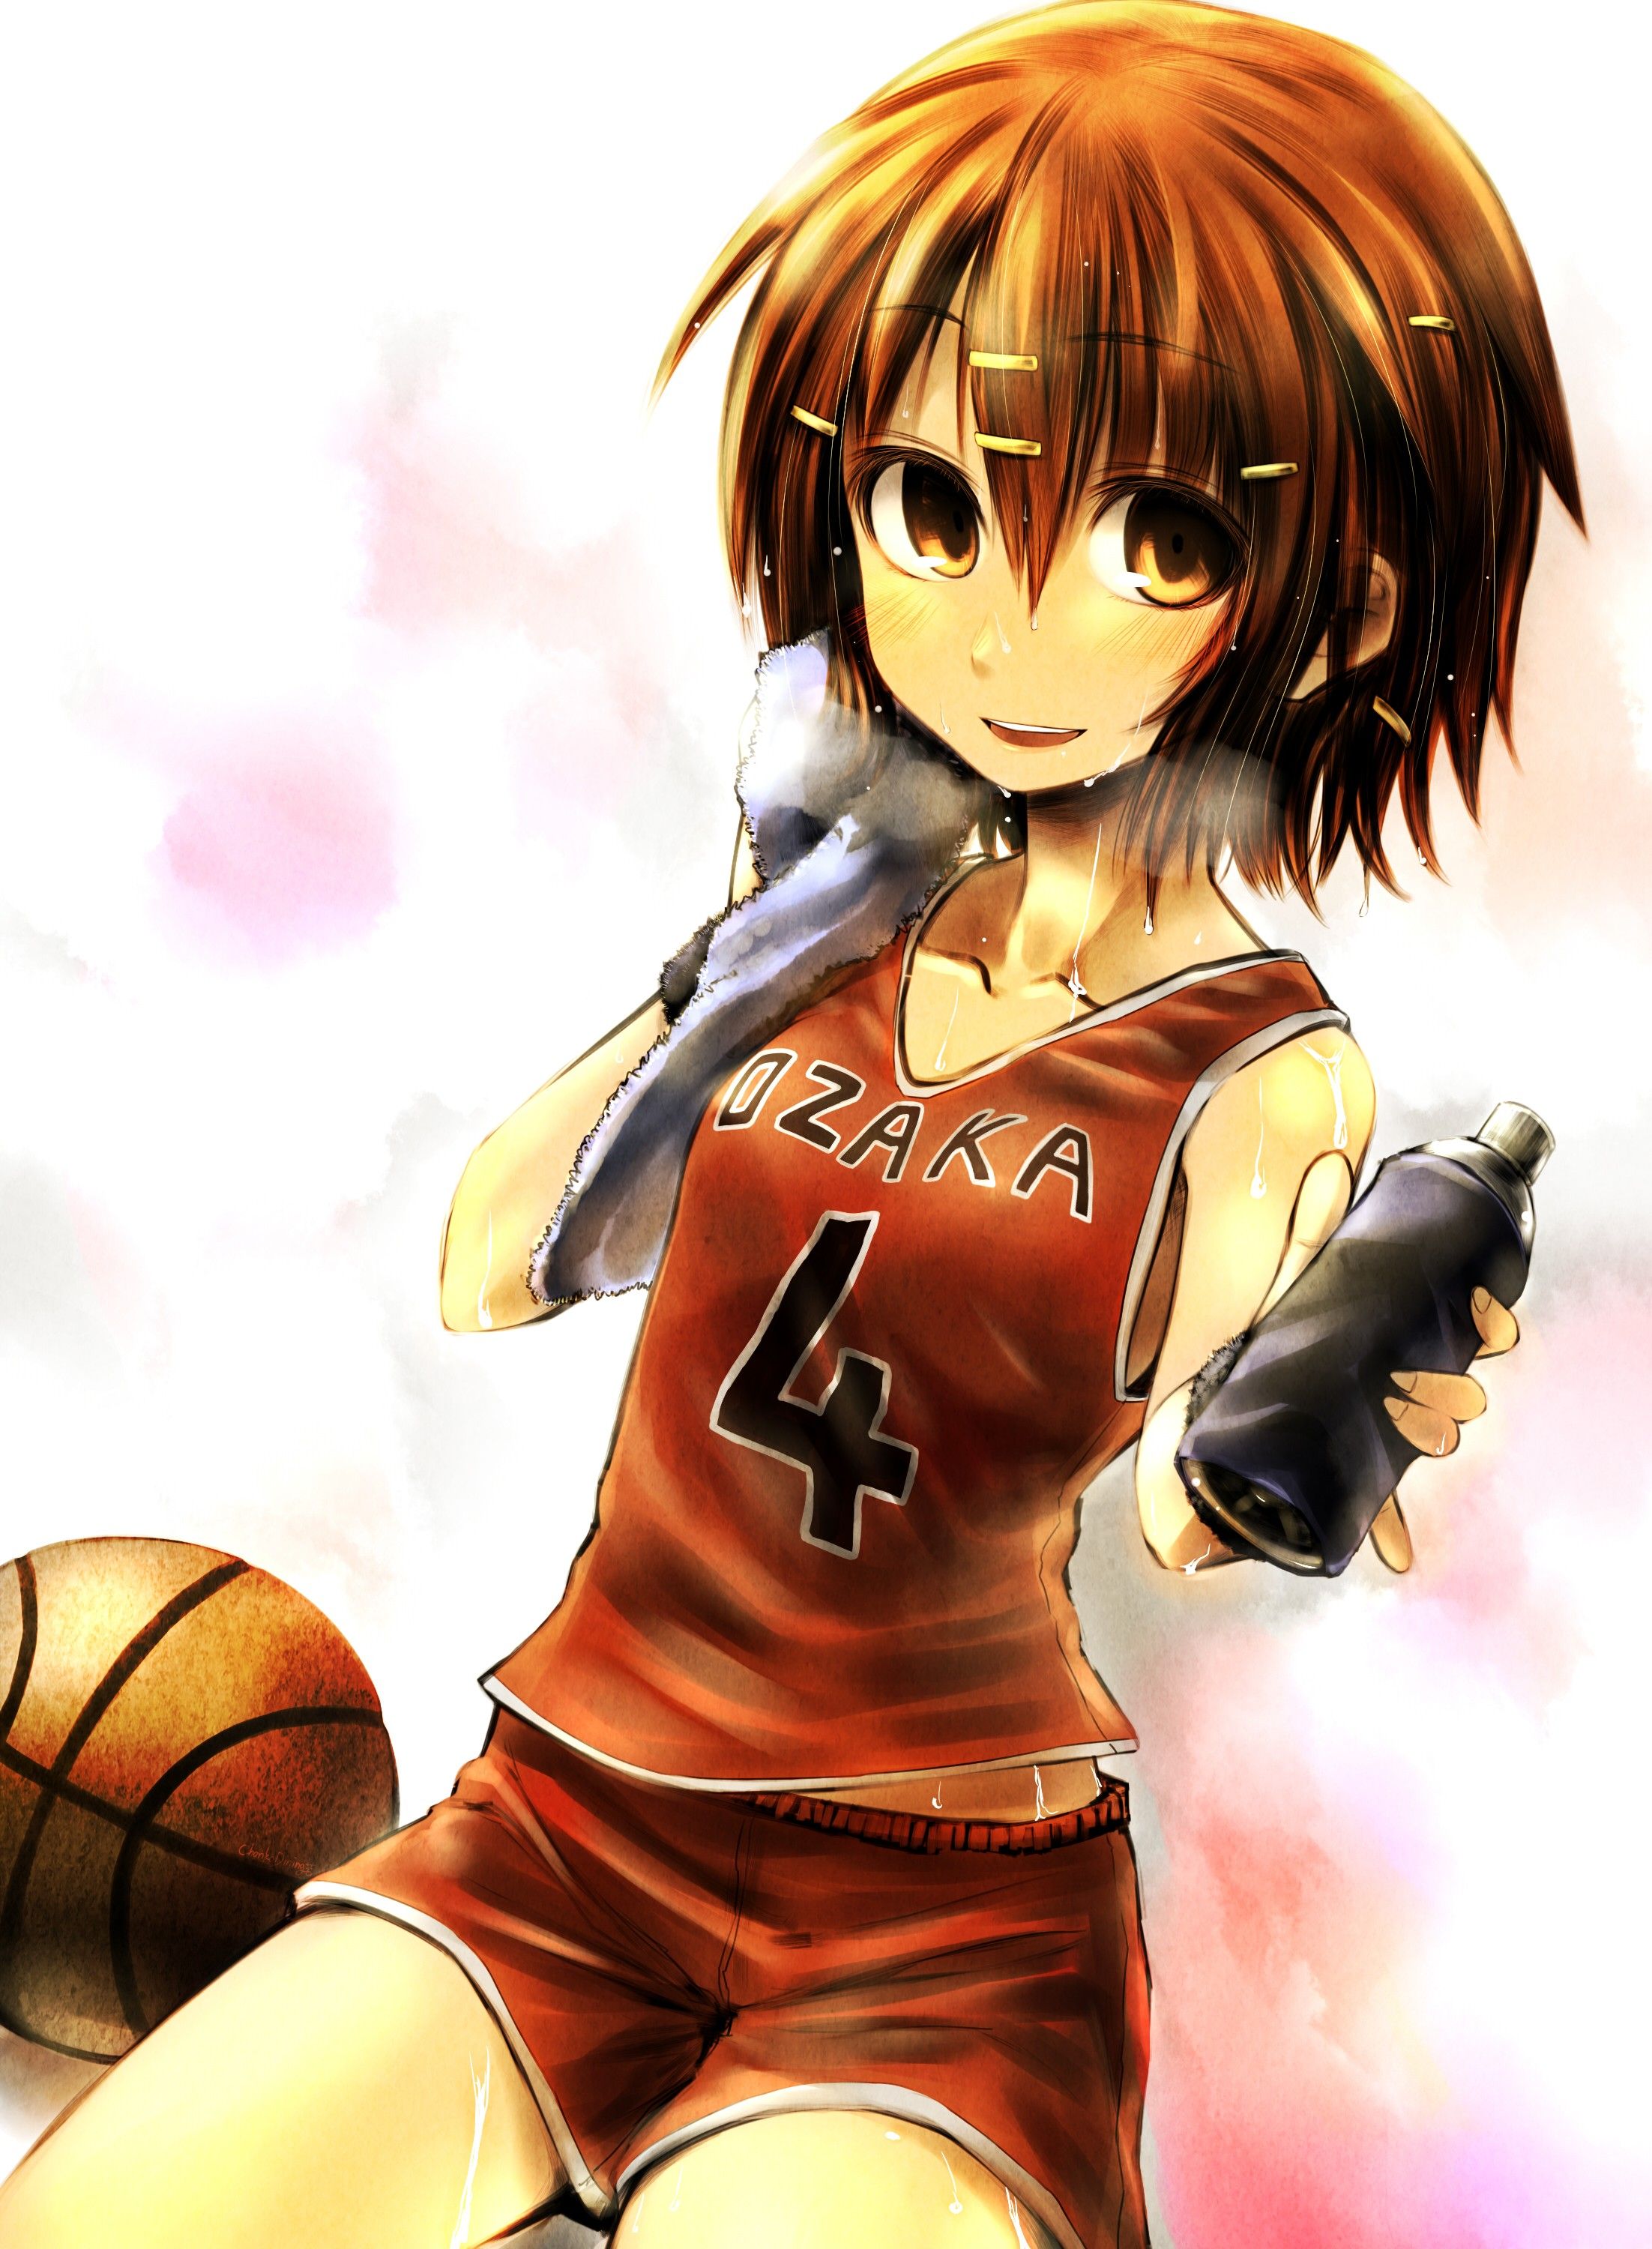 Anime Basketball Wallpapers